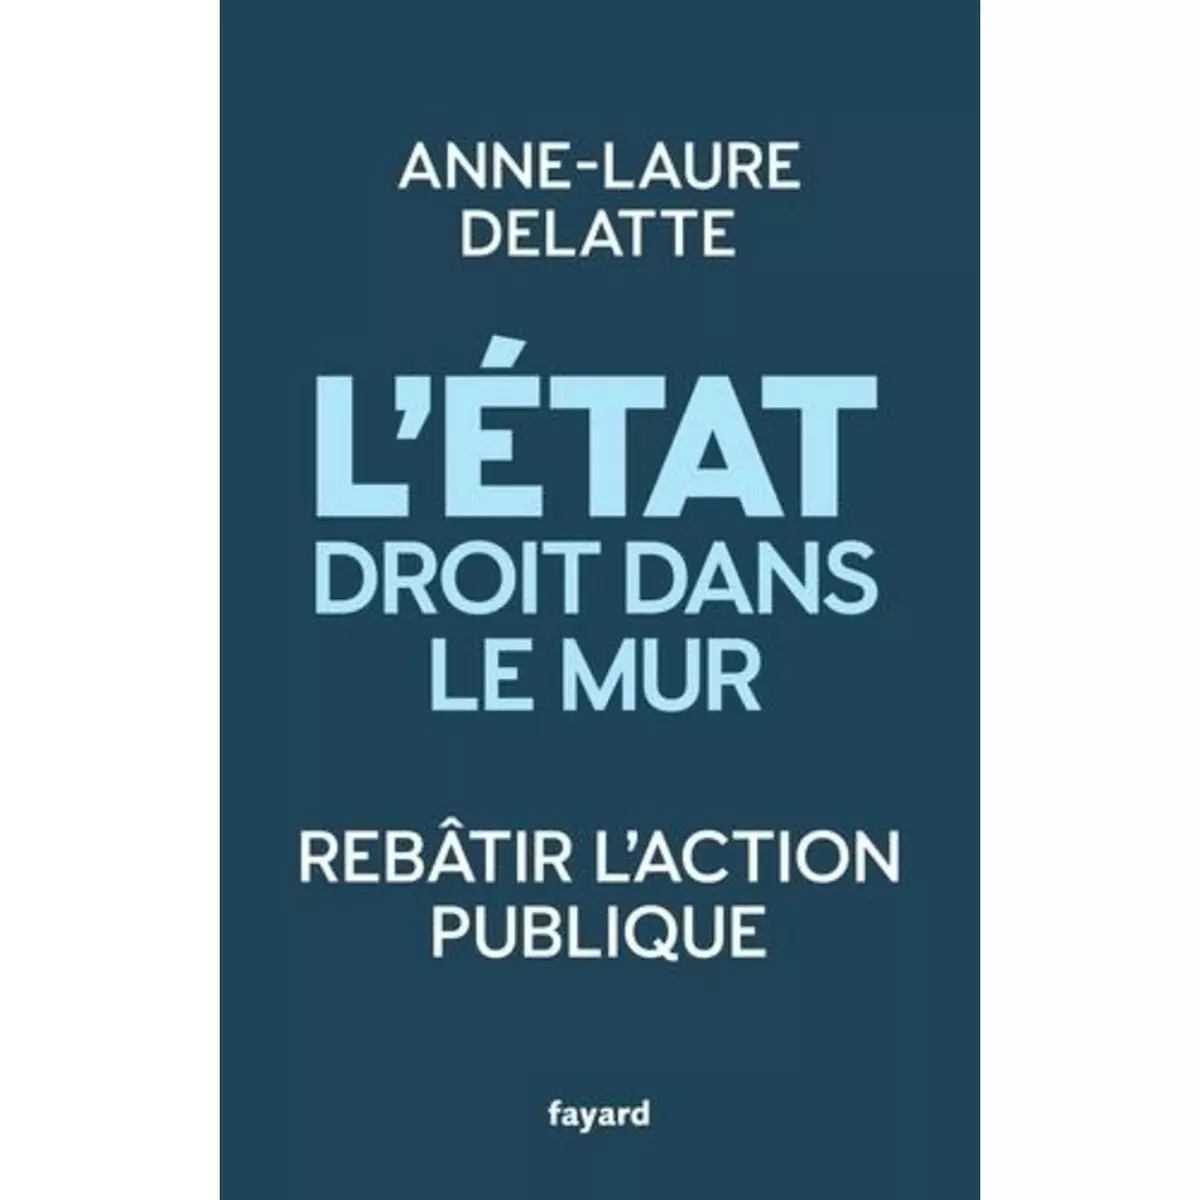  L'ETAT DROIT DANS LE MUR. REBATIR L'ACTION PUBLIQUE, Delatte Anne-Laure